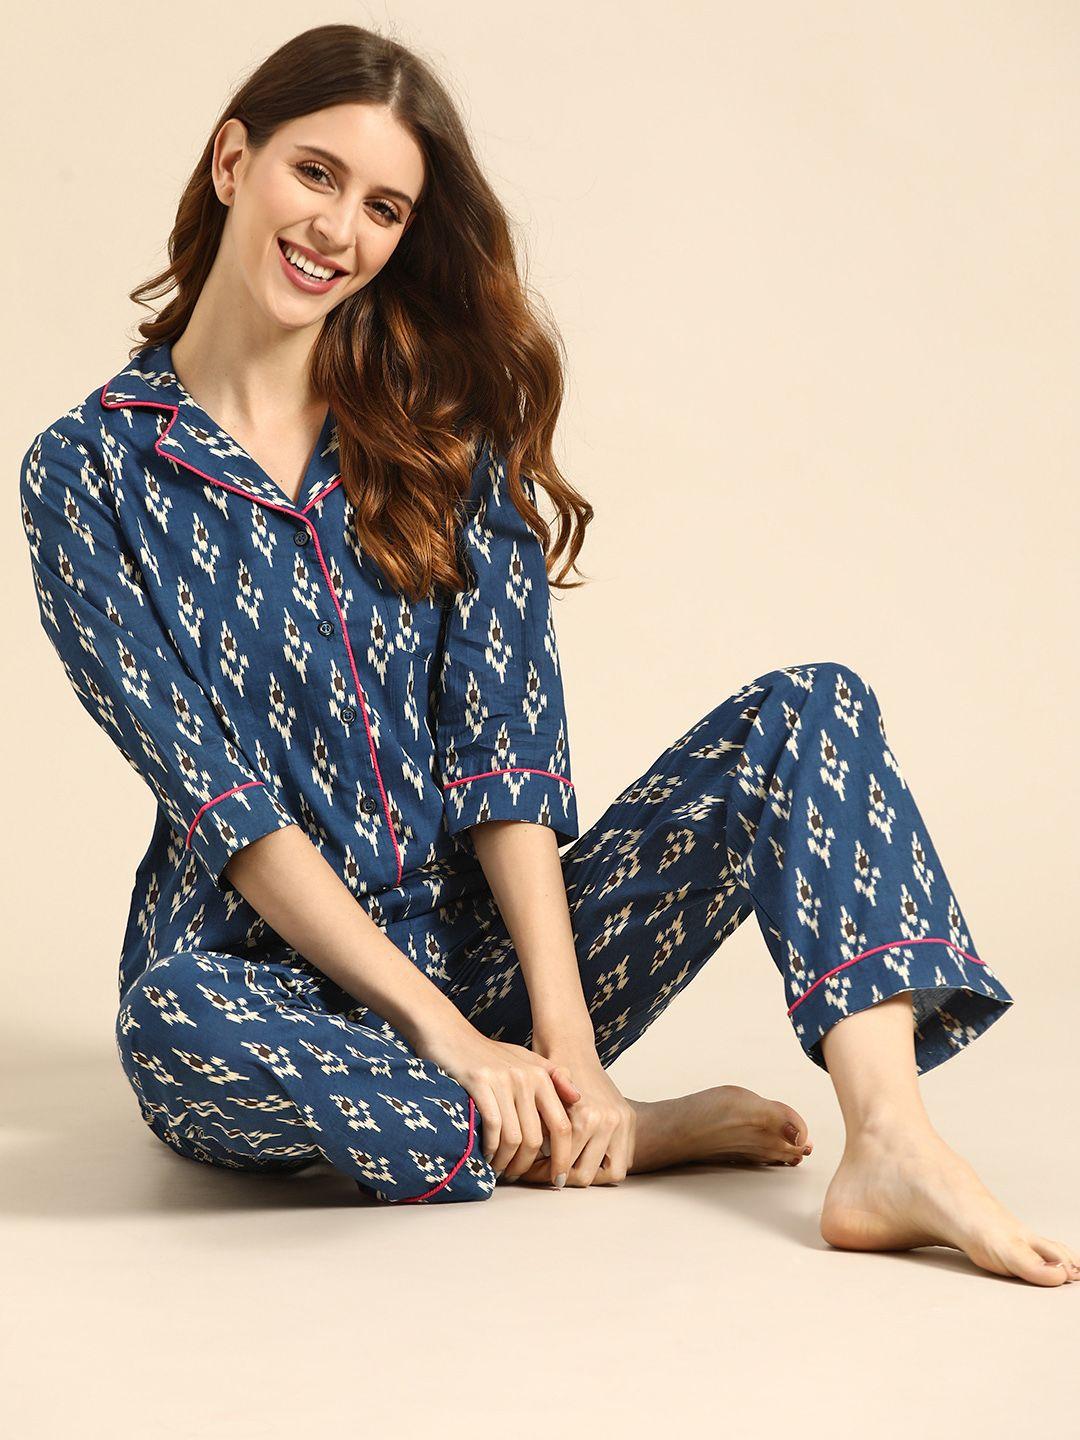 mabish-by-sonal-jain-women-navy-blue-&-white-ethnic-motifs-print-cotton-pyjamas-set